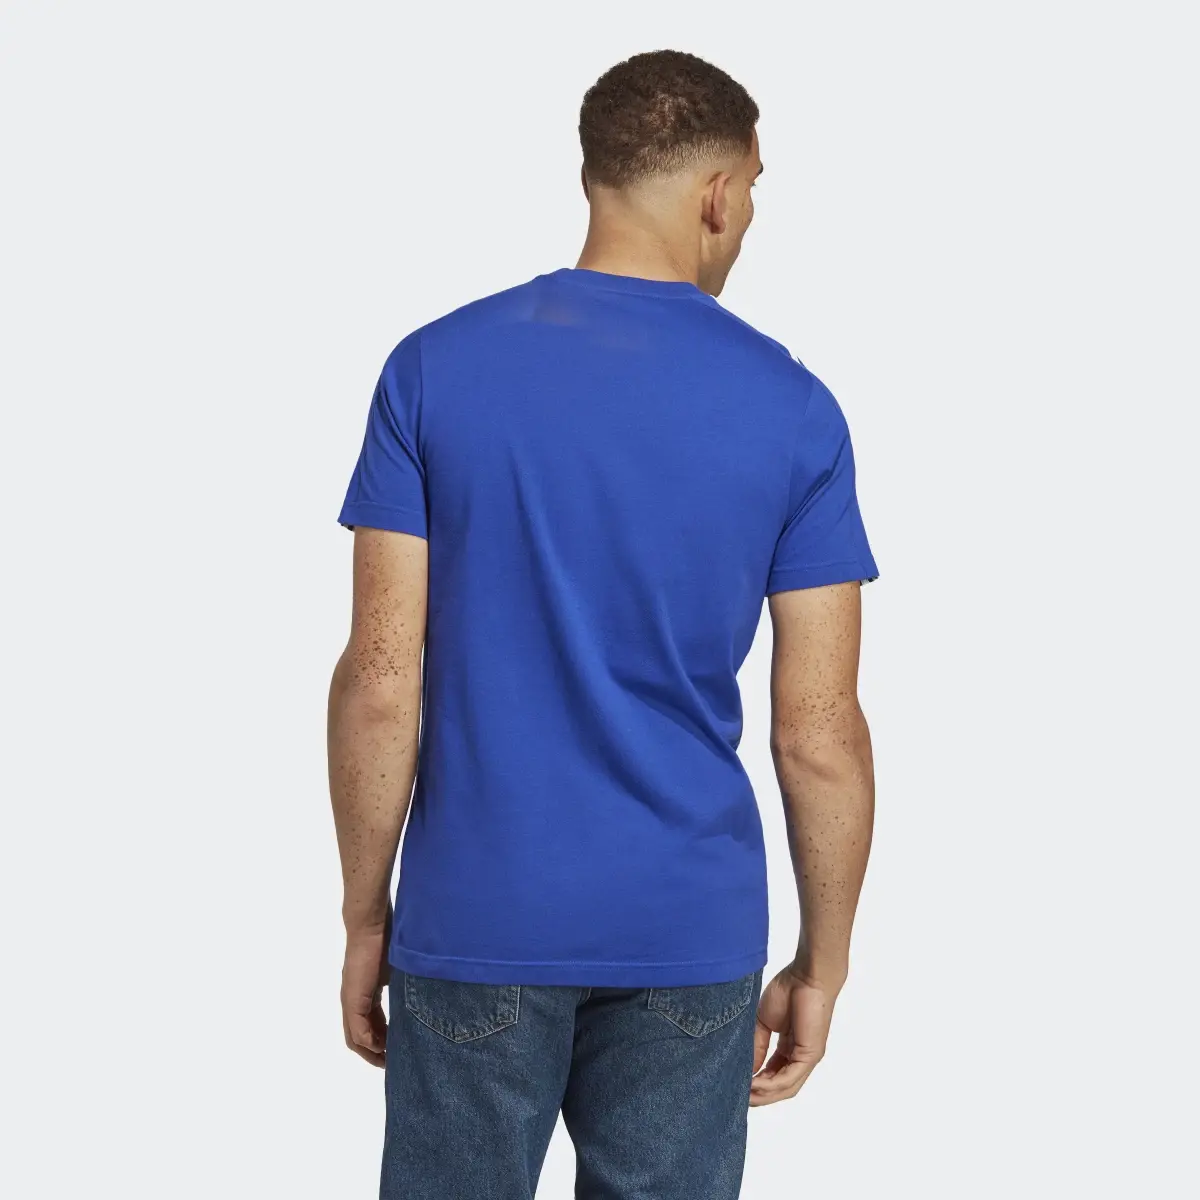 Adidas Essentials Single Jersey 3-Streifen T-Shirt. 3